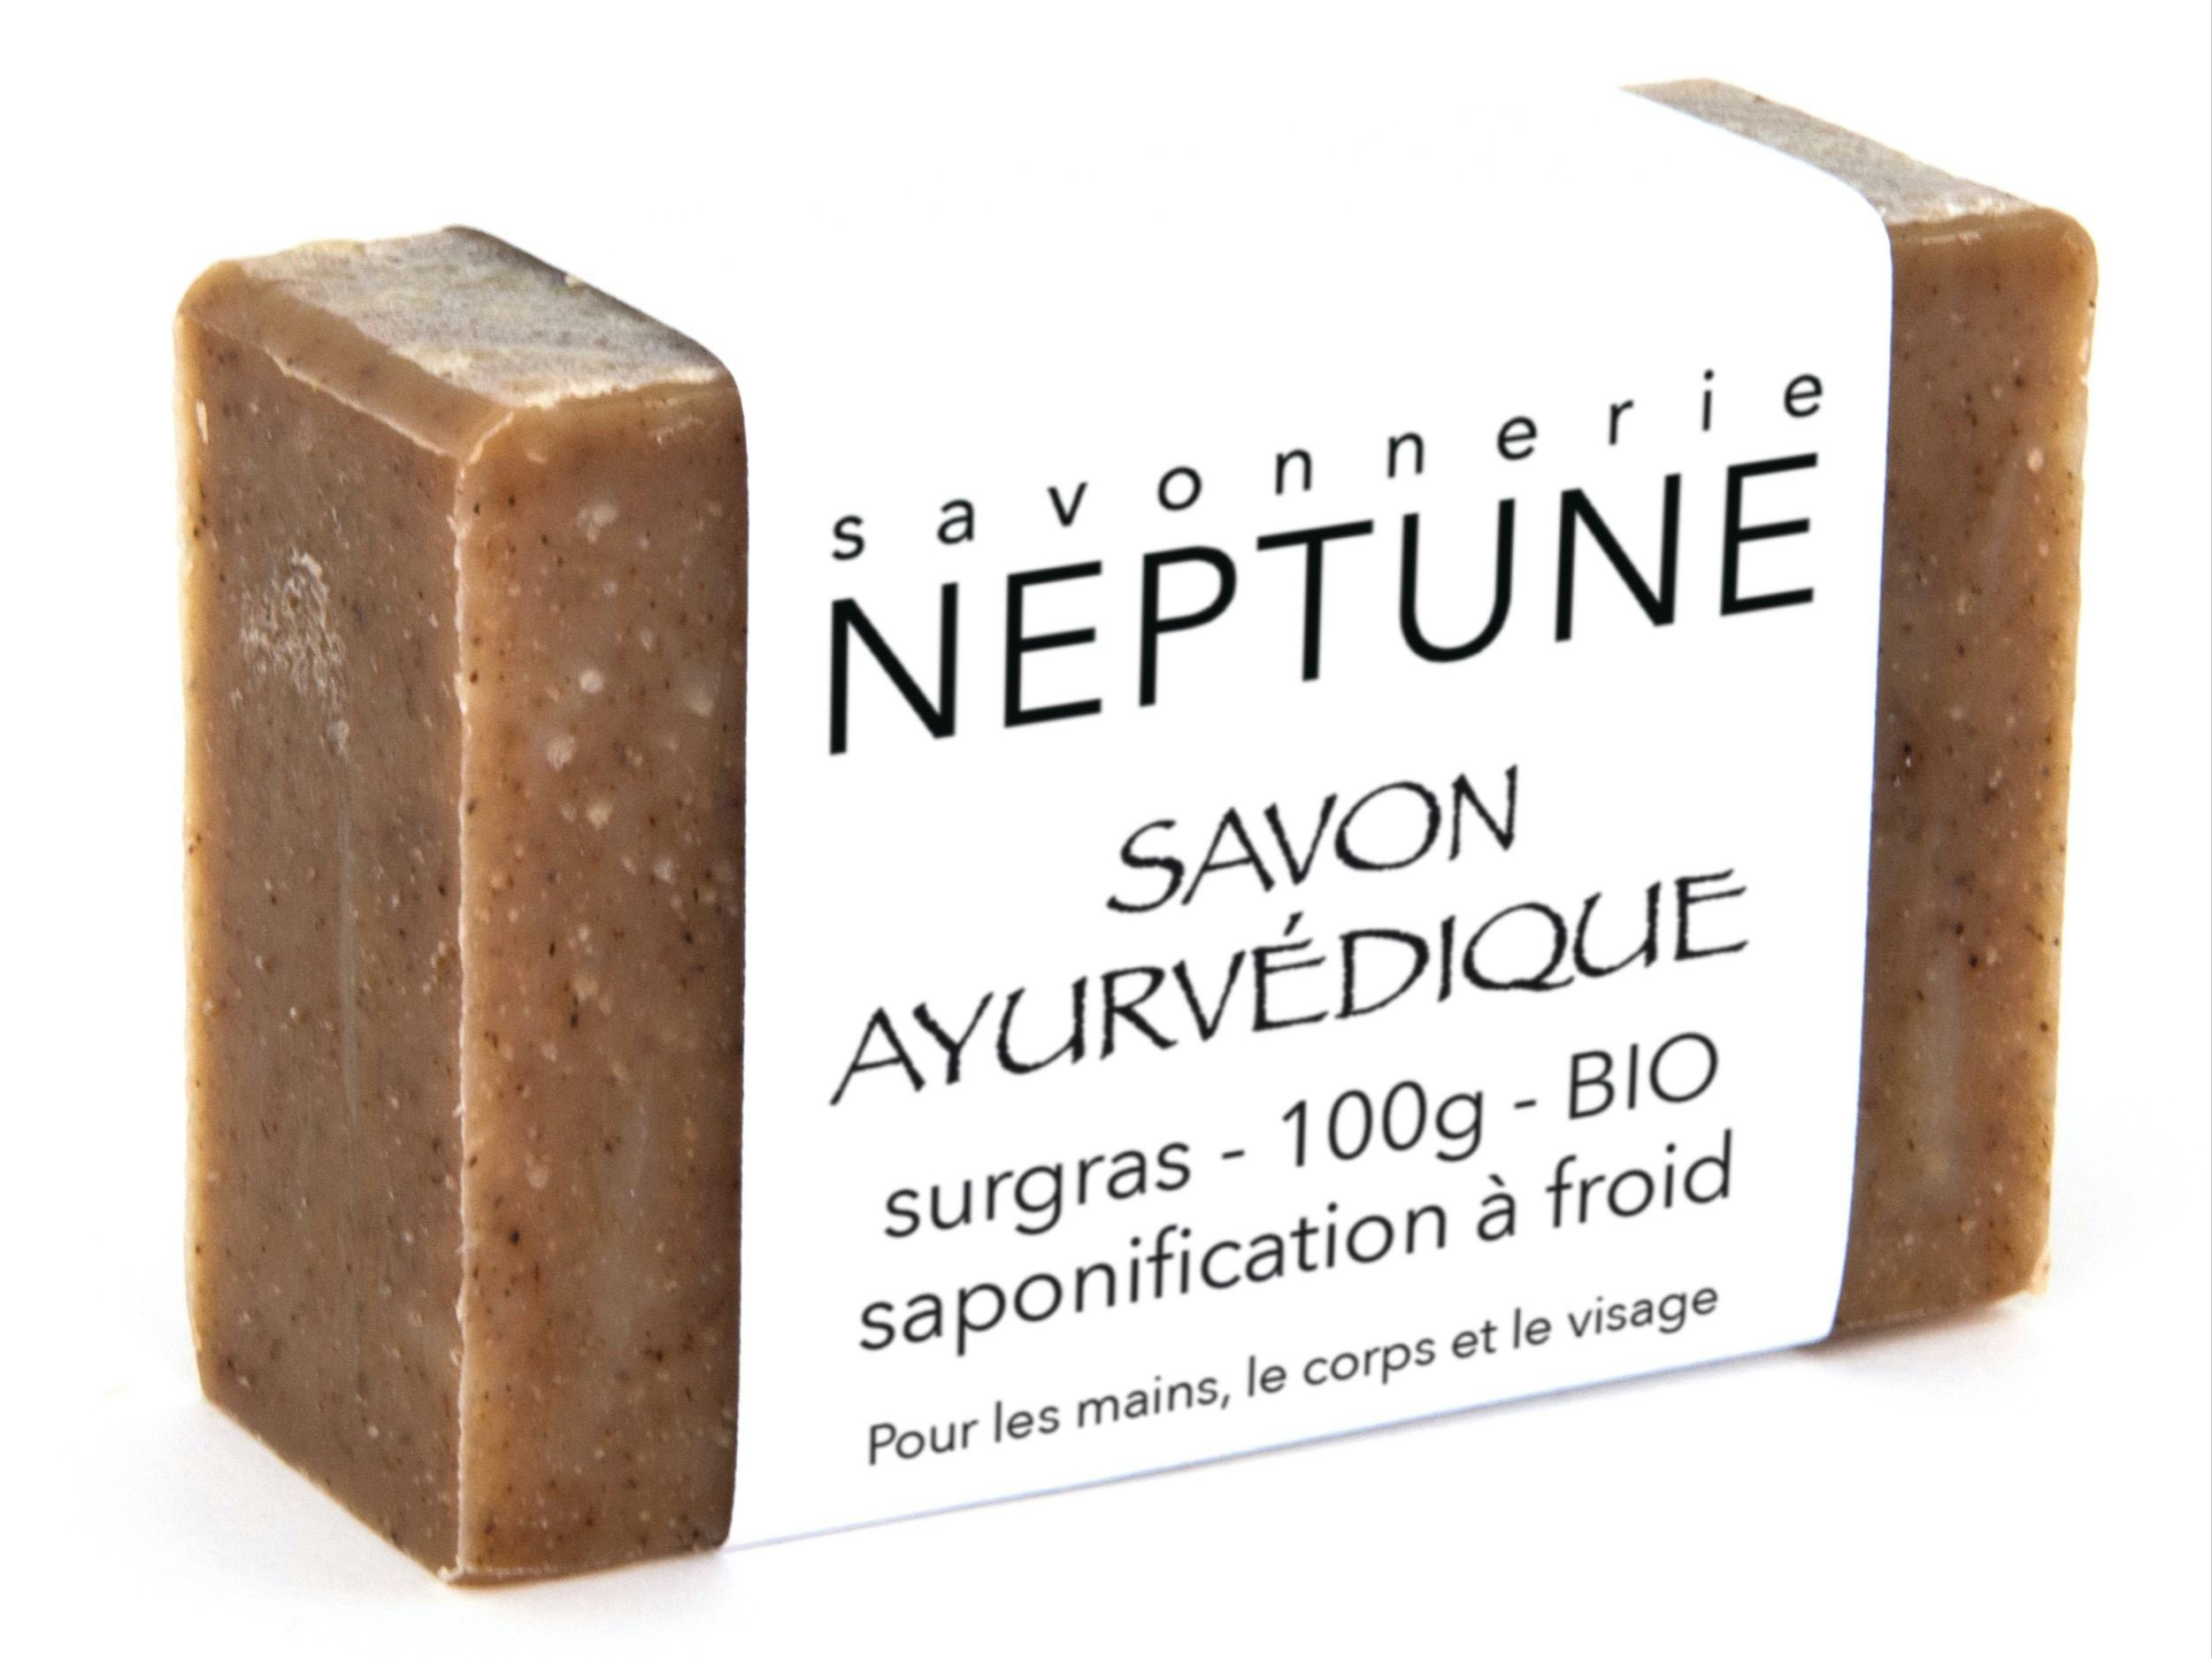 Savon ayurvédique - bio, artisanal product for direct sale in Switzerland